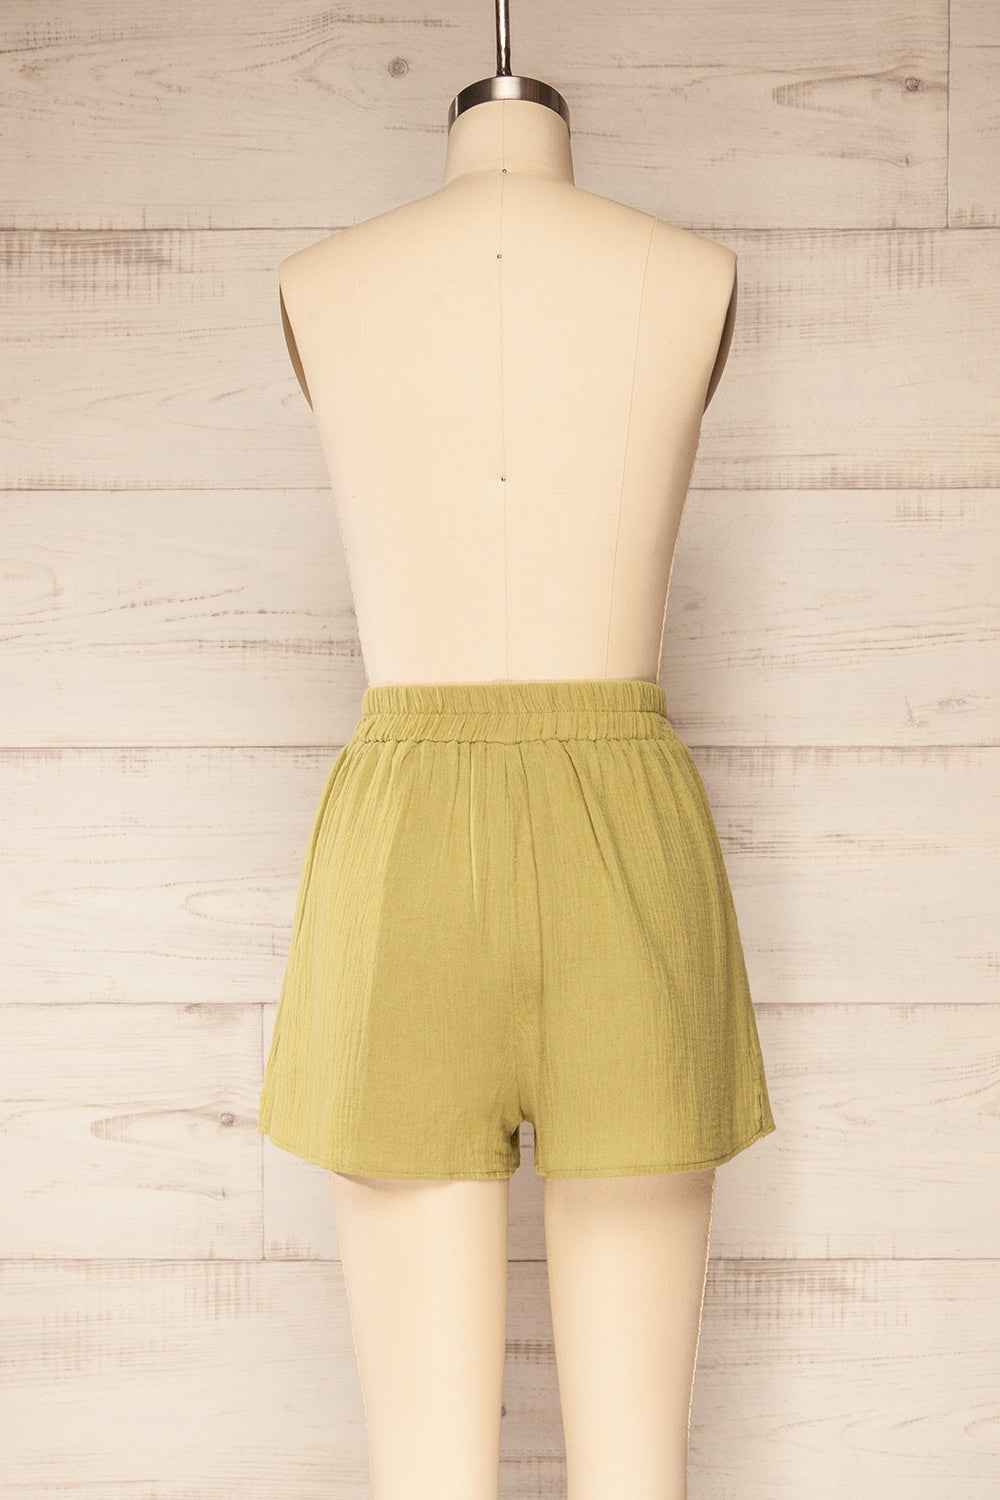 Dunedin Green High-Waisted Textured Shorts | La petite garçonne back view